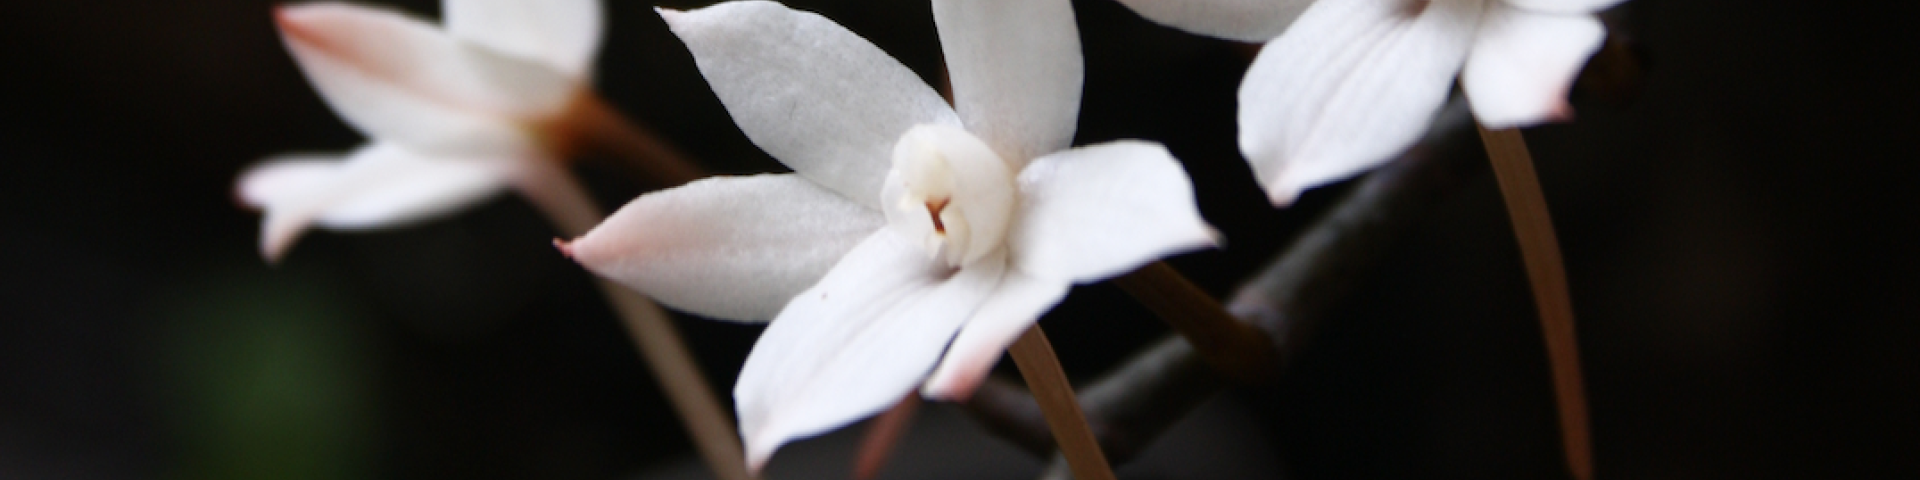 Fotol on orhidee Aerangis biloba. XII orhideenäituse visuaal.